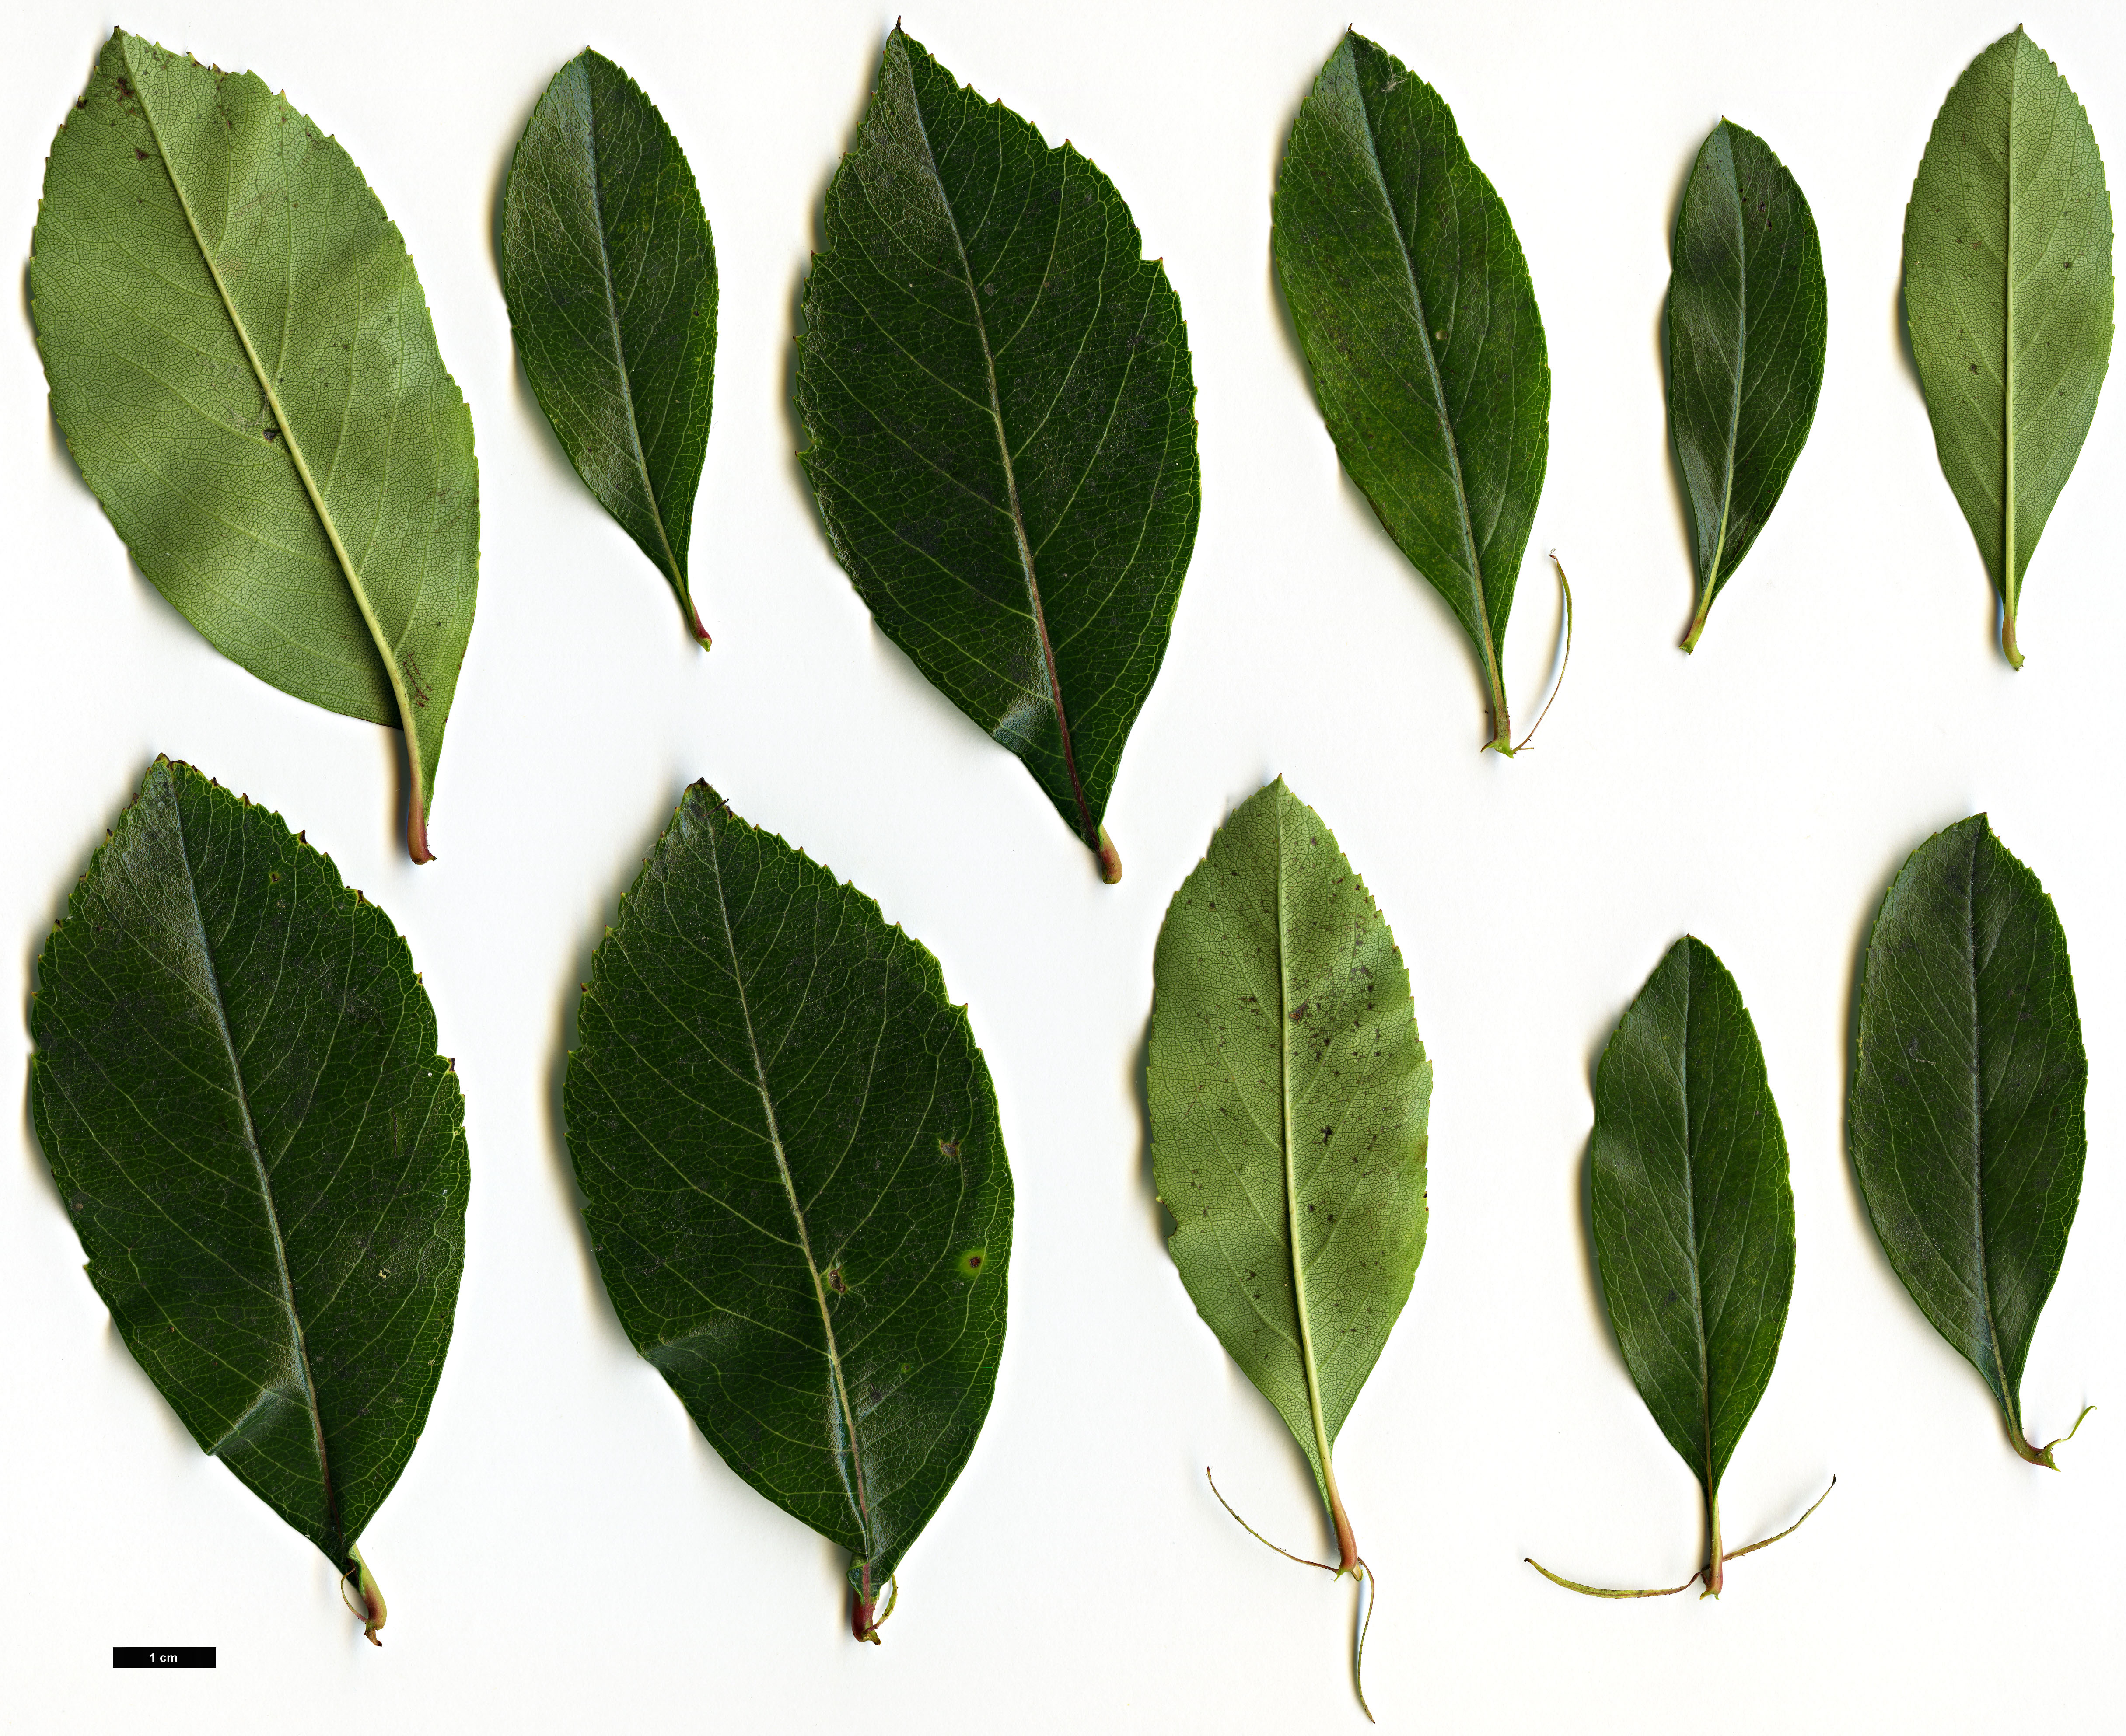 High resolution image: Family: Rosaceae - Genus: Crataegus - Taxon: crus-galli - SpeciesSub: var. pyracanthifolia